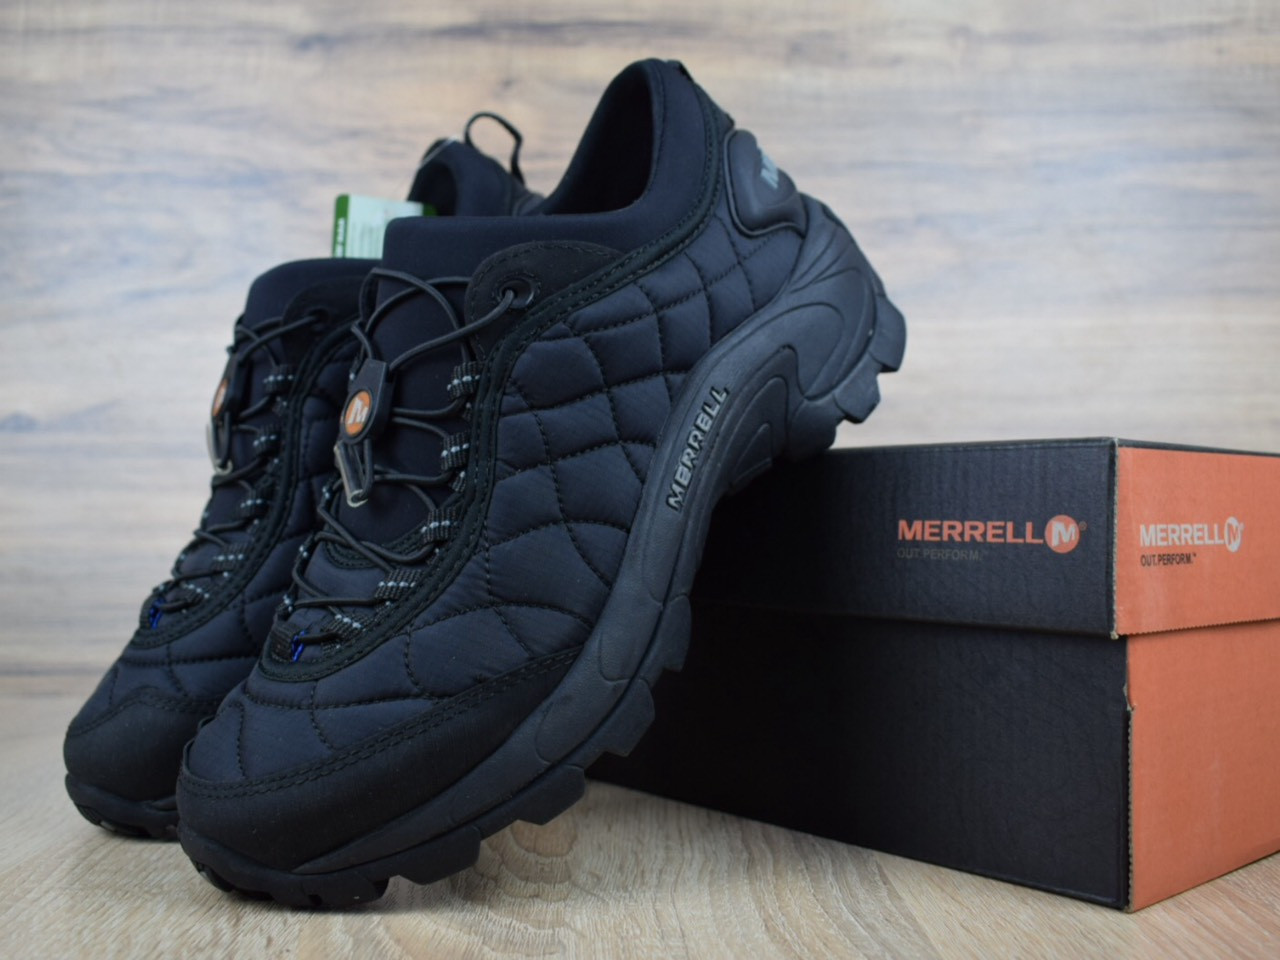 Чоловічі зимові черевики Merrell ICEBERG MOC (на флісі), чорні. Розміри (41,42,43,45), фото 1